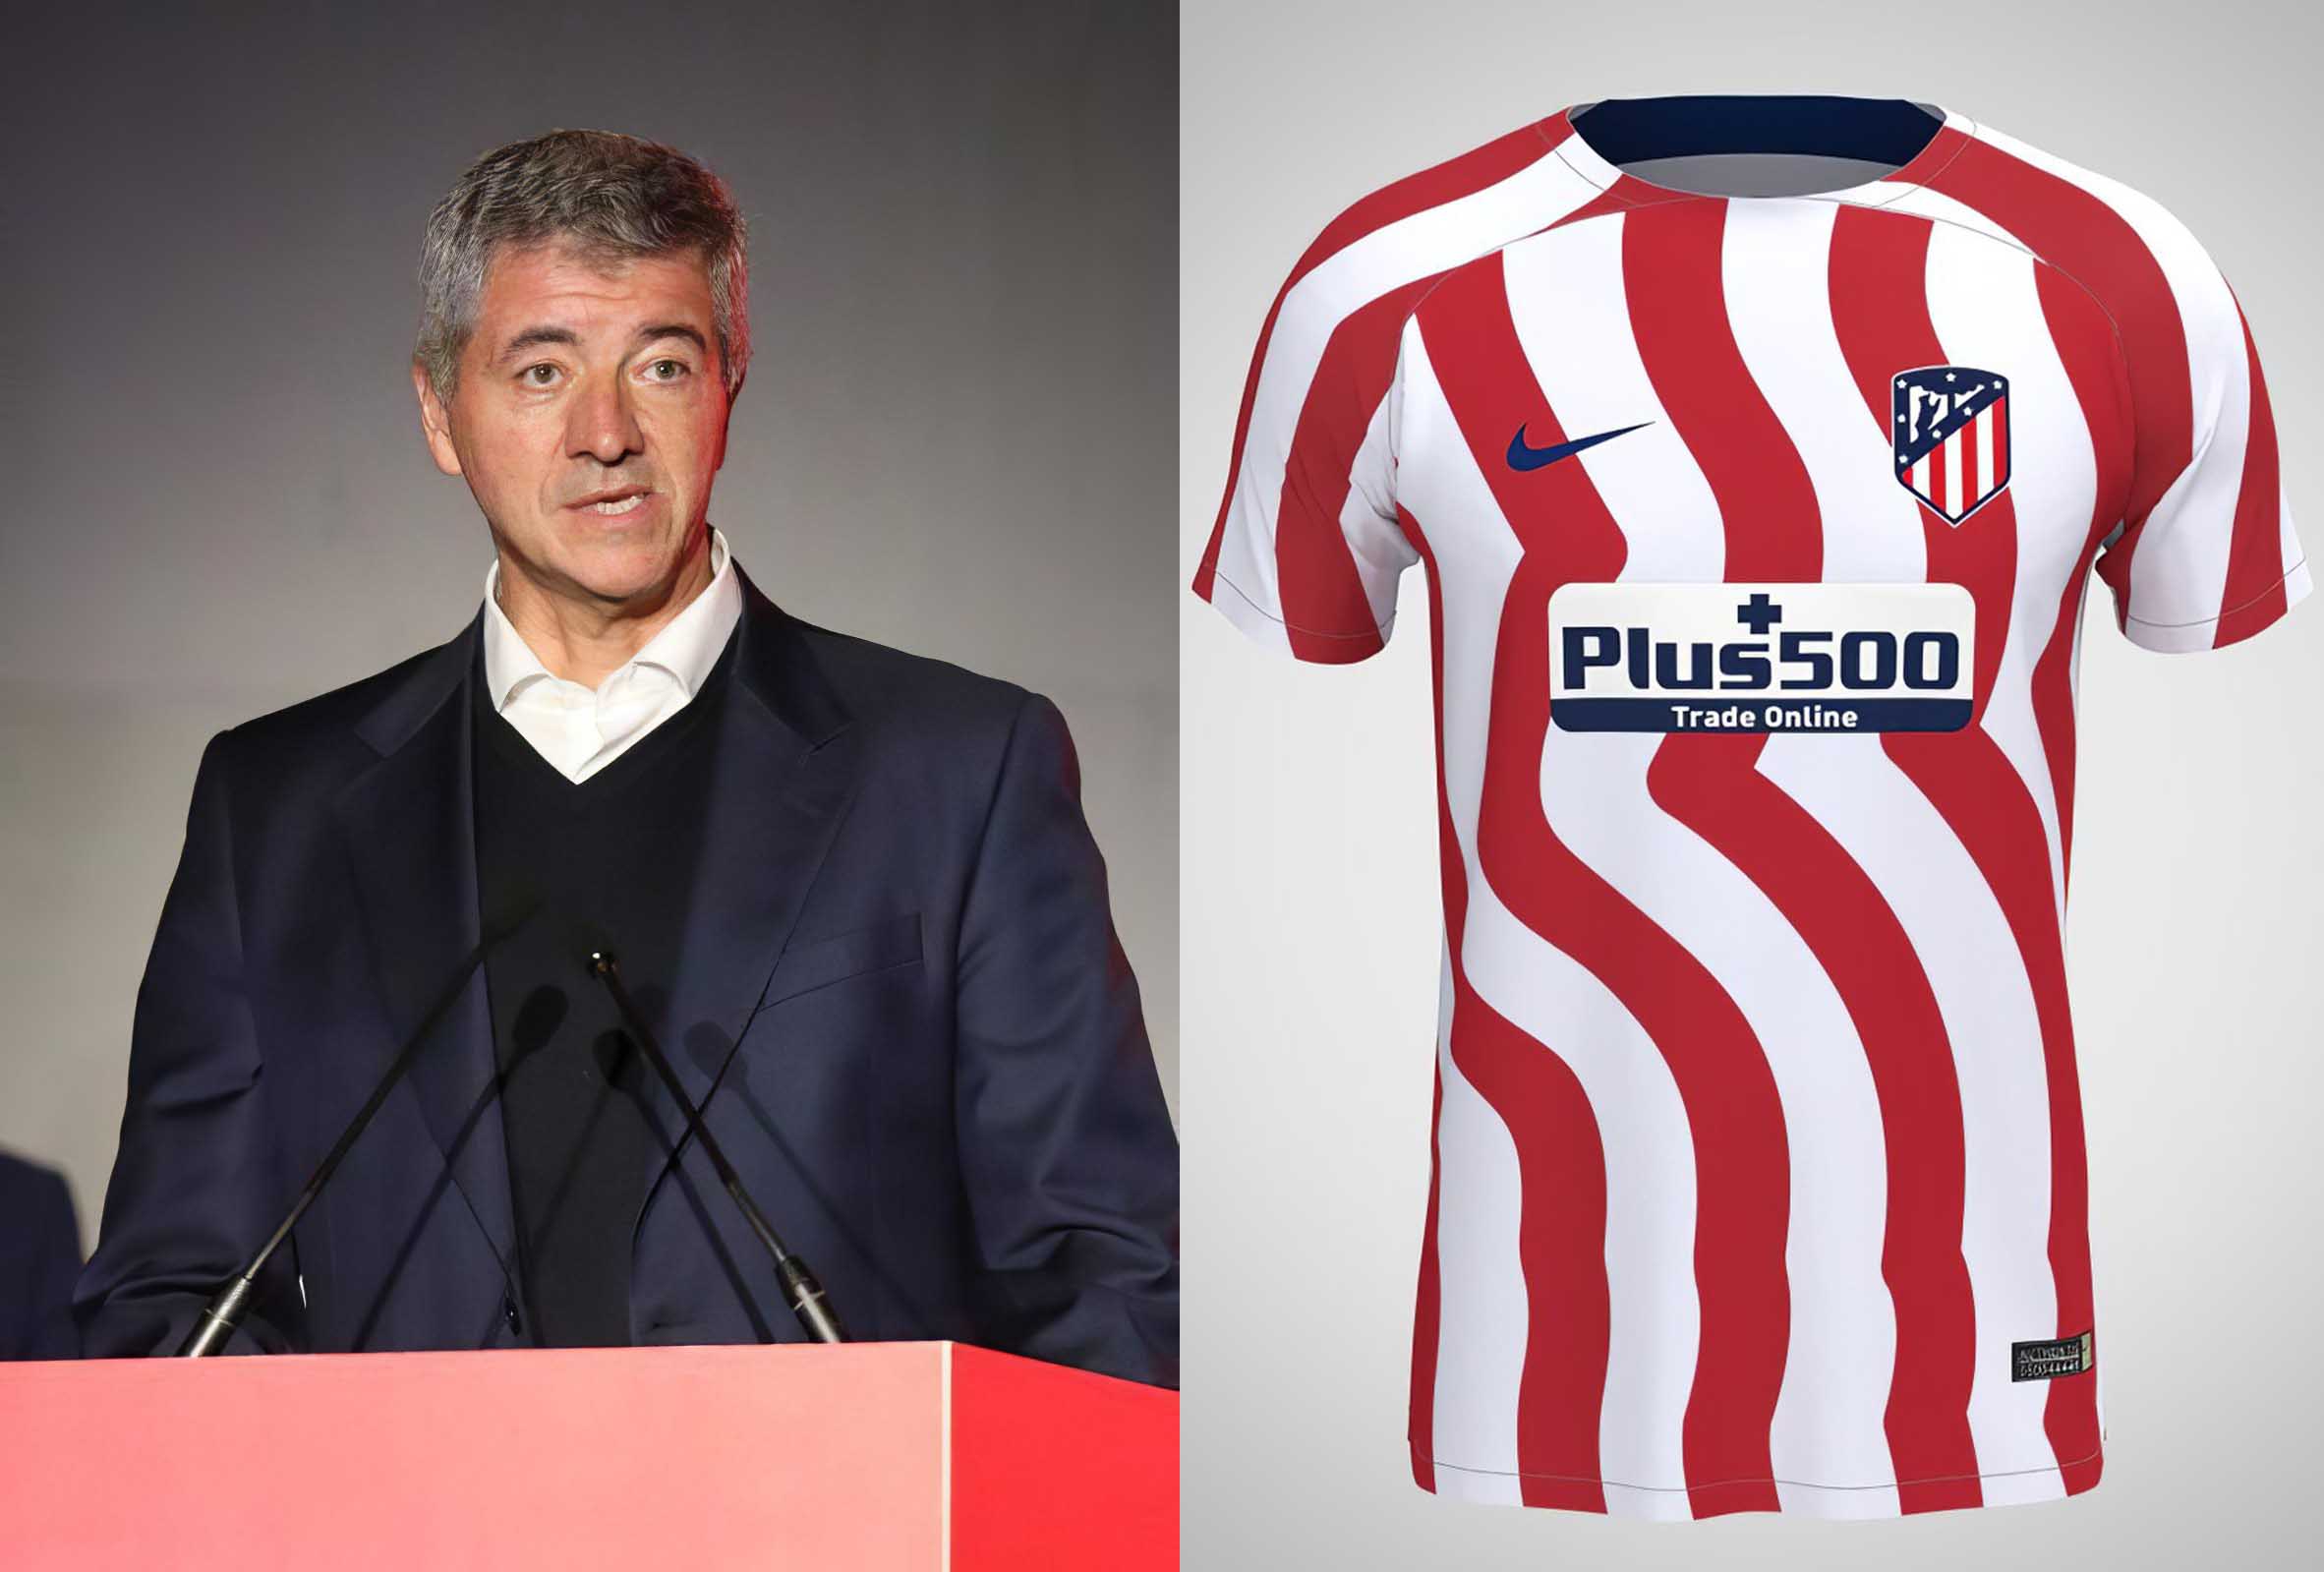 Miguel Ángel Gil Marín, CEO del Atleti, pide disculpas a los seguidores a los que no les ha gustado la nueva camiseta